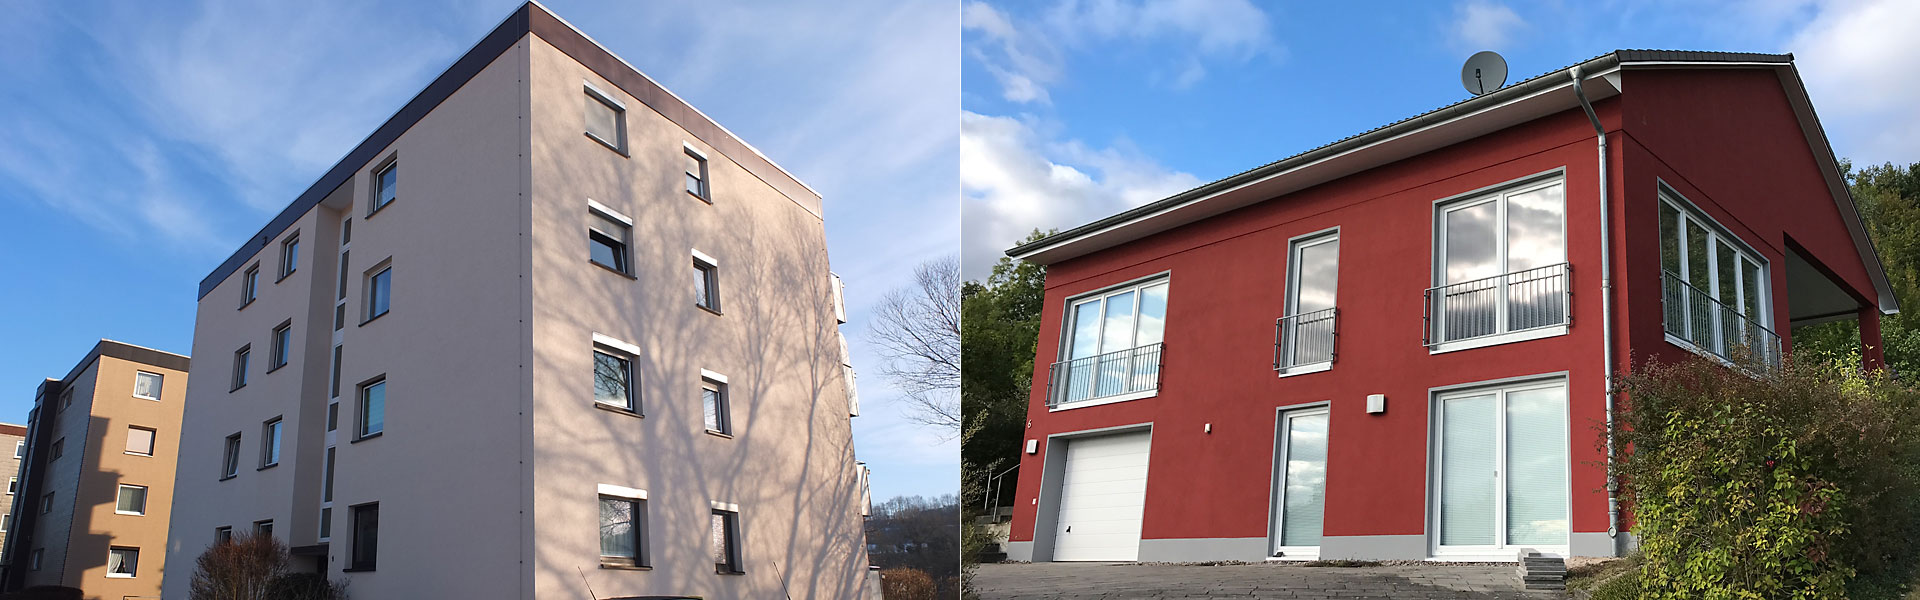 Fassadensanierung und Fassadenrenovierung in Bad Gandersheim und Umgebung, Seesen, Kreiensen, Kalefeld, Lamspringe, Einbeck, Northeim.